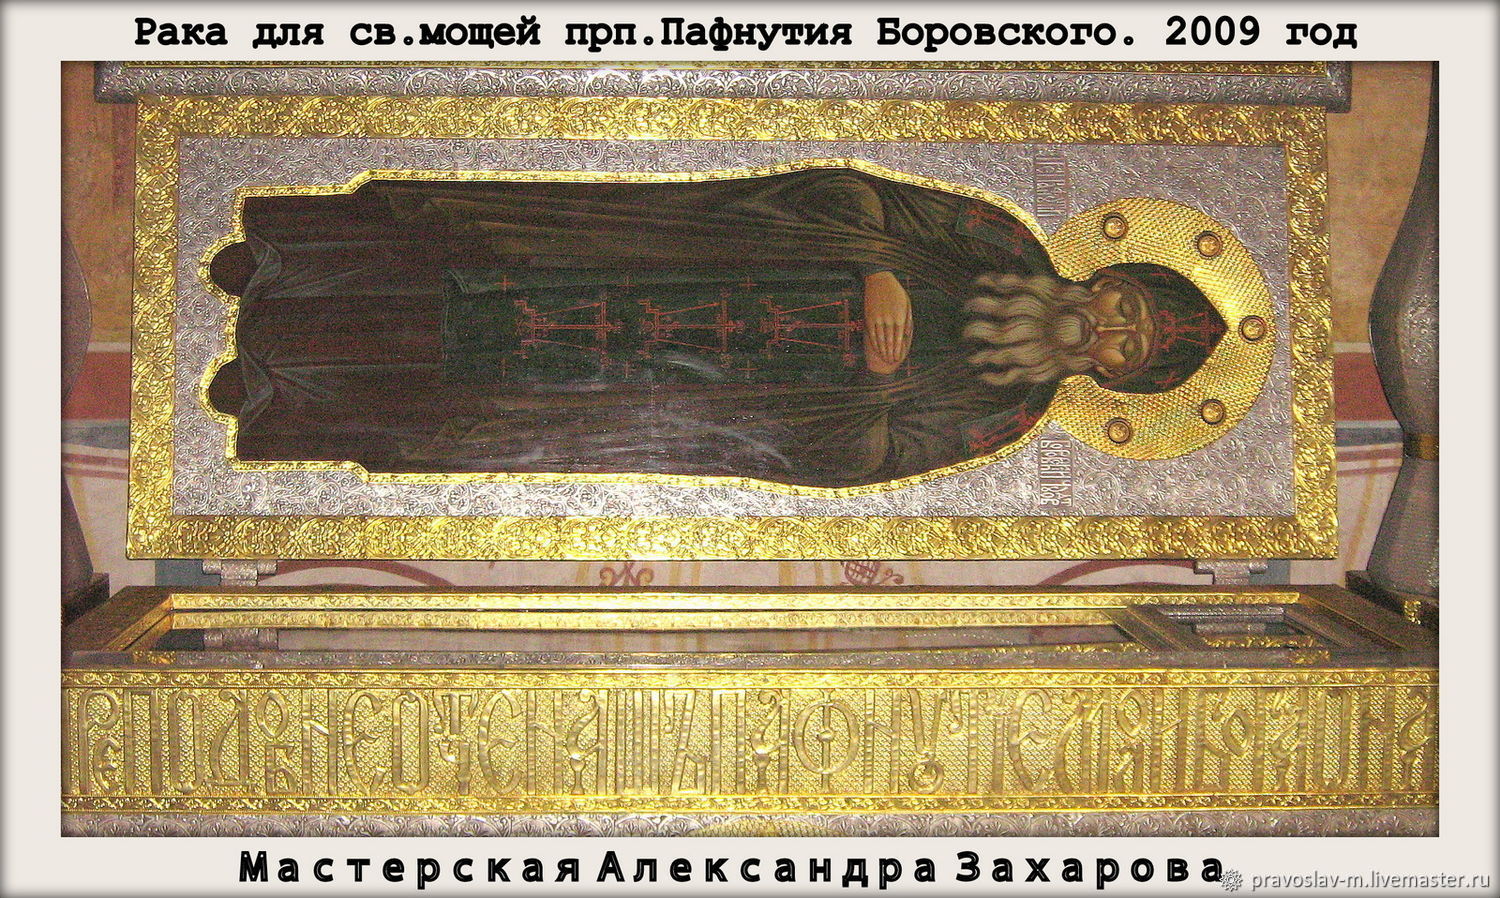 Икона прп. Пафнутия Боровского